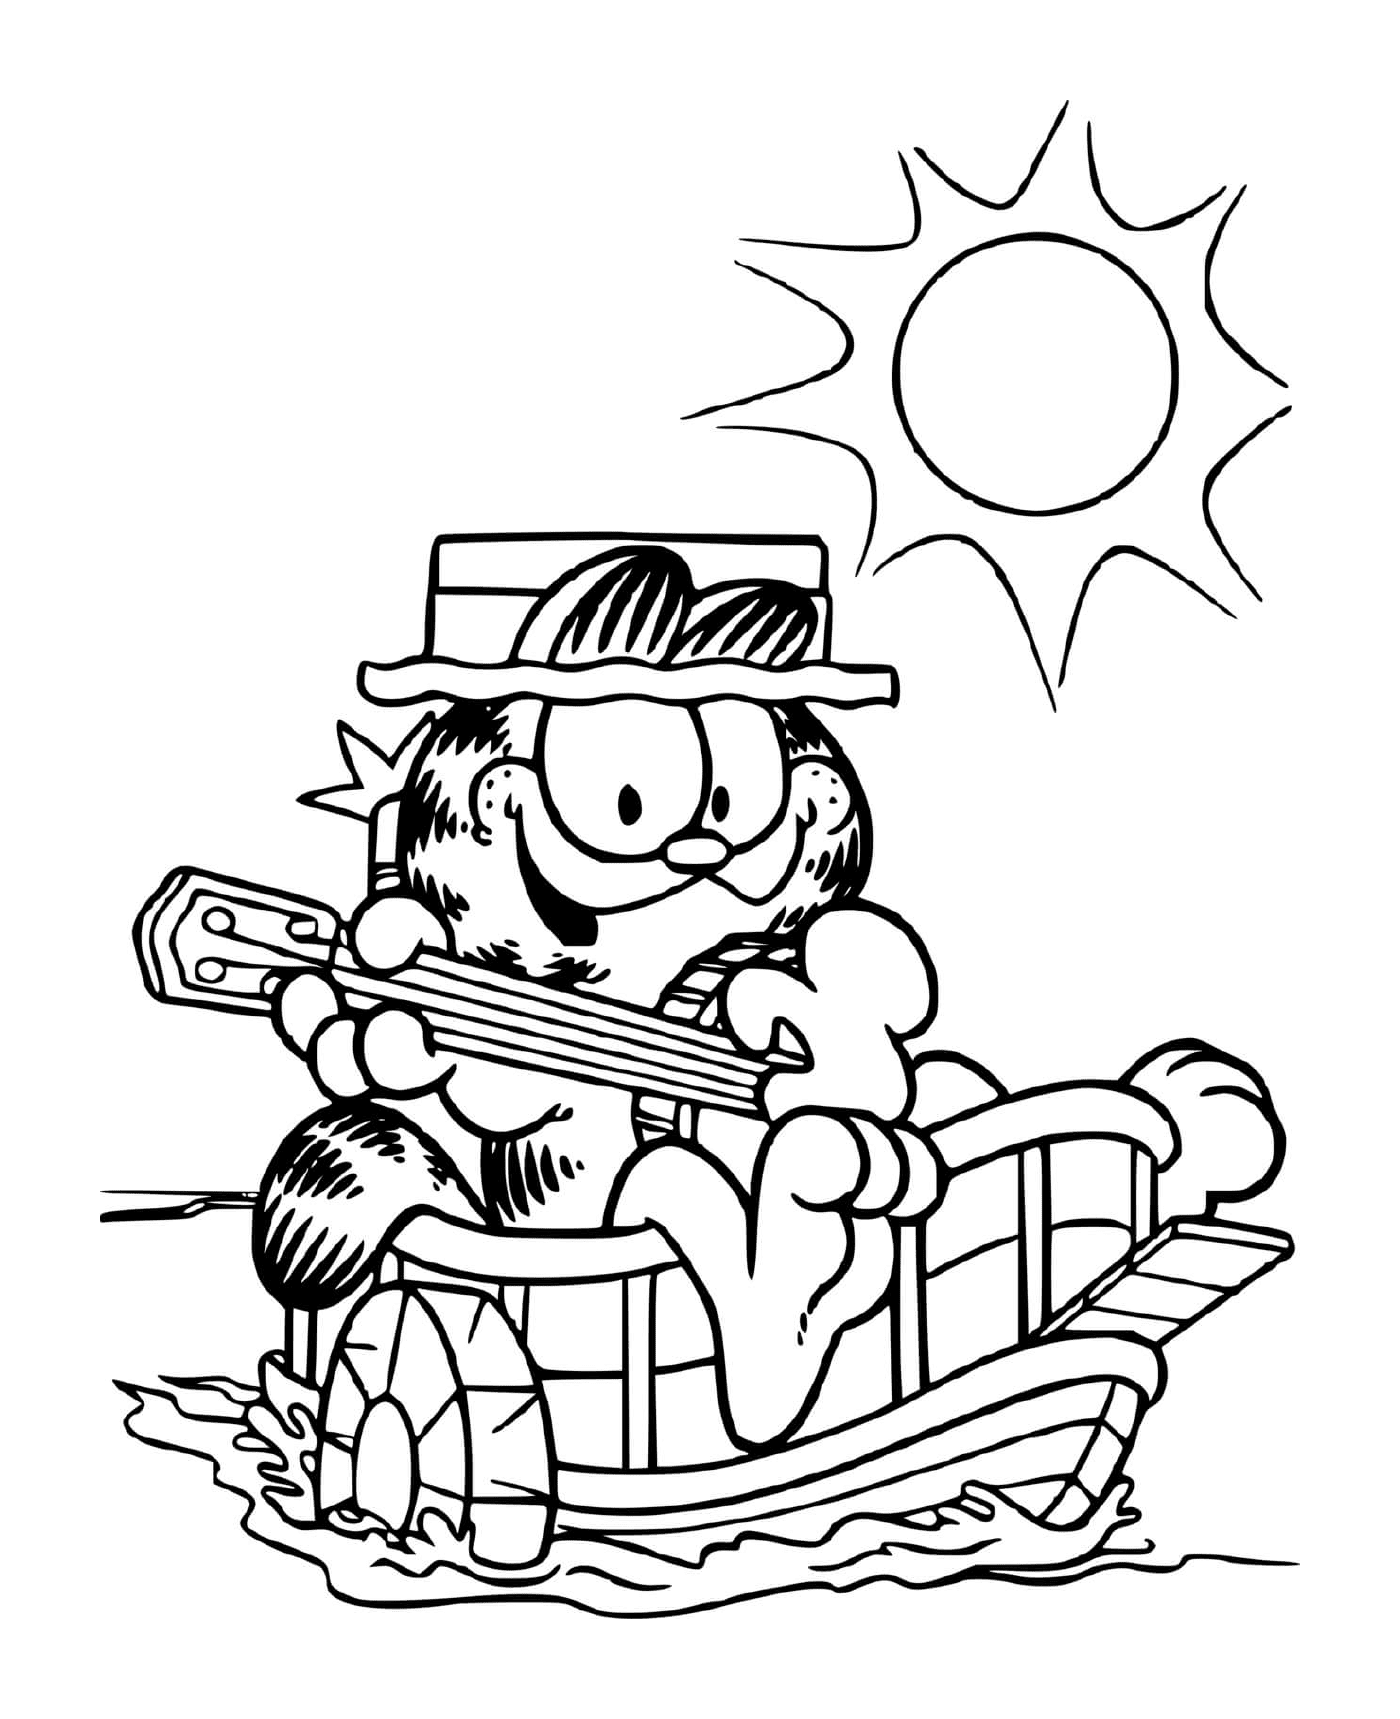  Garfield toca la guitarra en su barco 